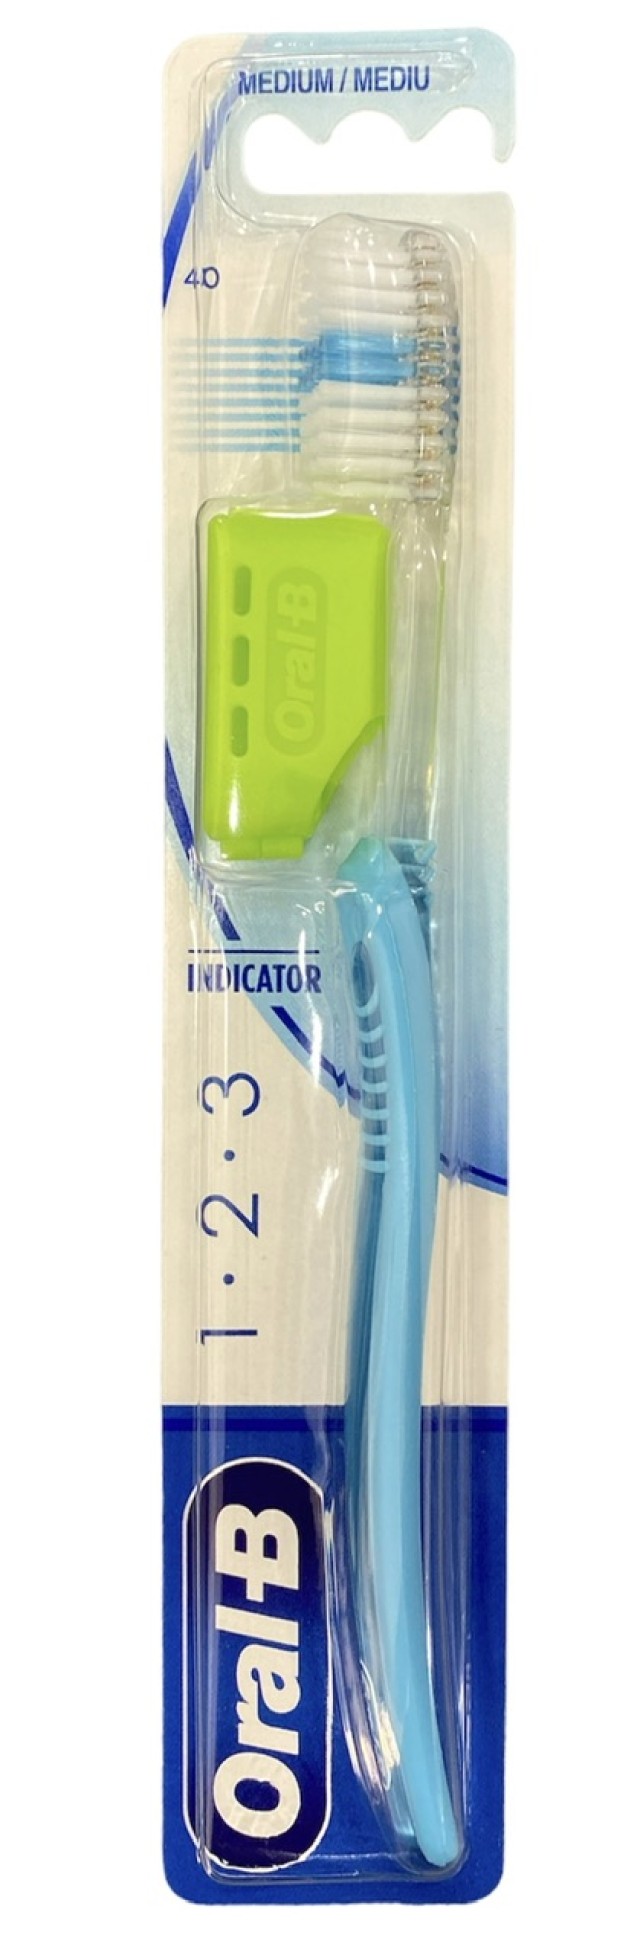 Oral-B Οδοντόβουρτσα Μέτρια Indicator 1-2-3 40mm Χρώμα Γαλάζιο, 1τμχ